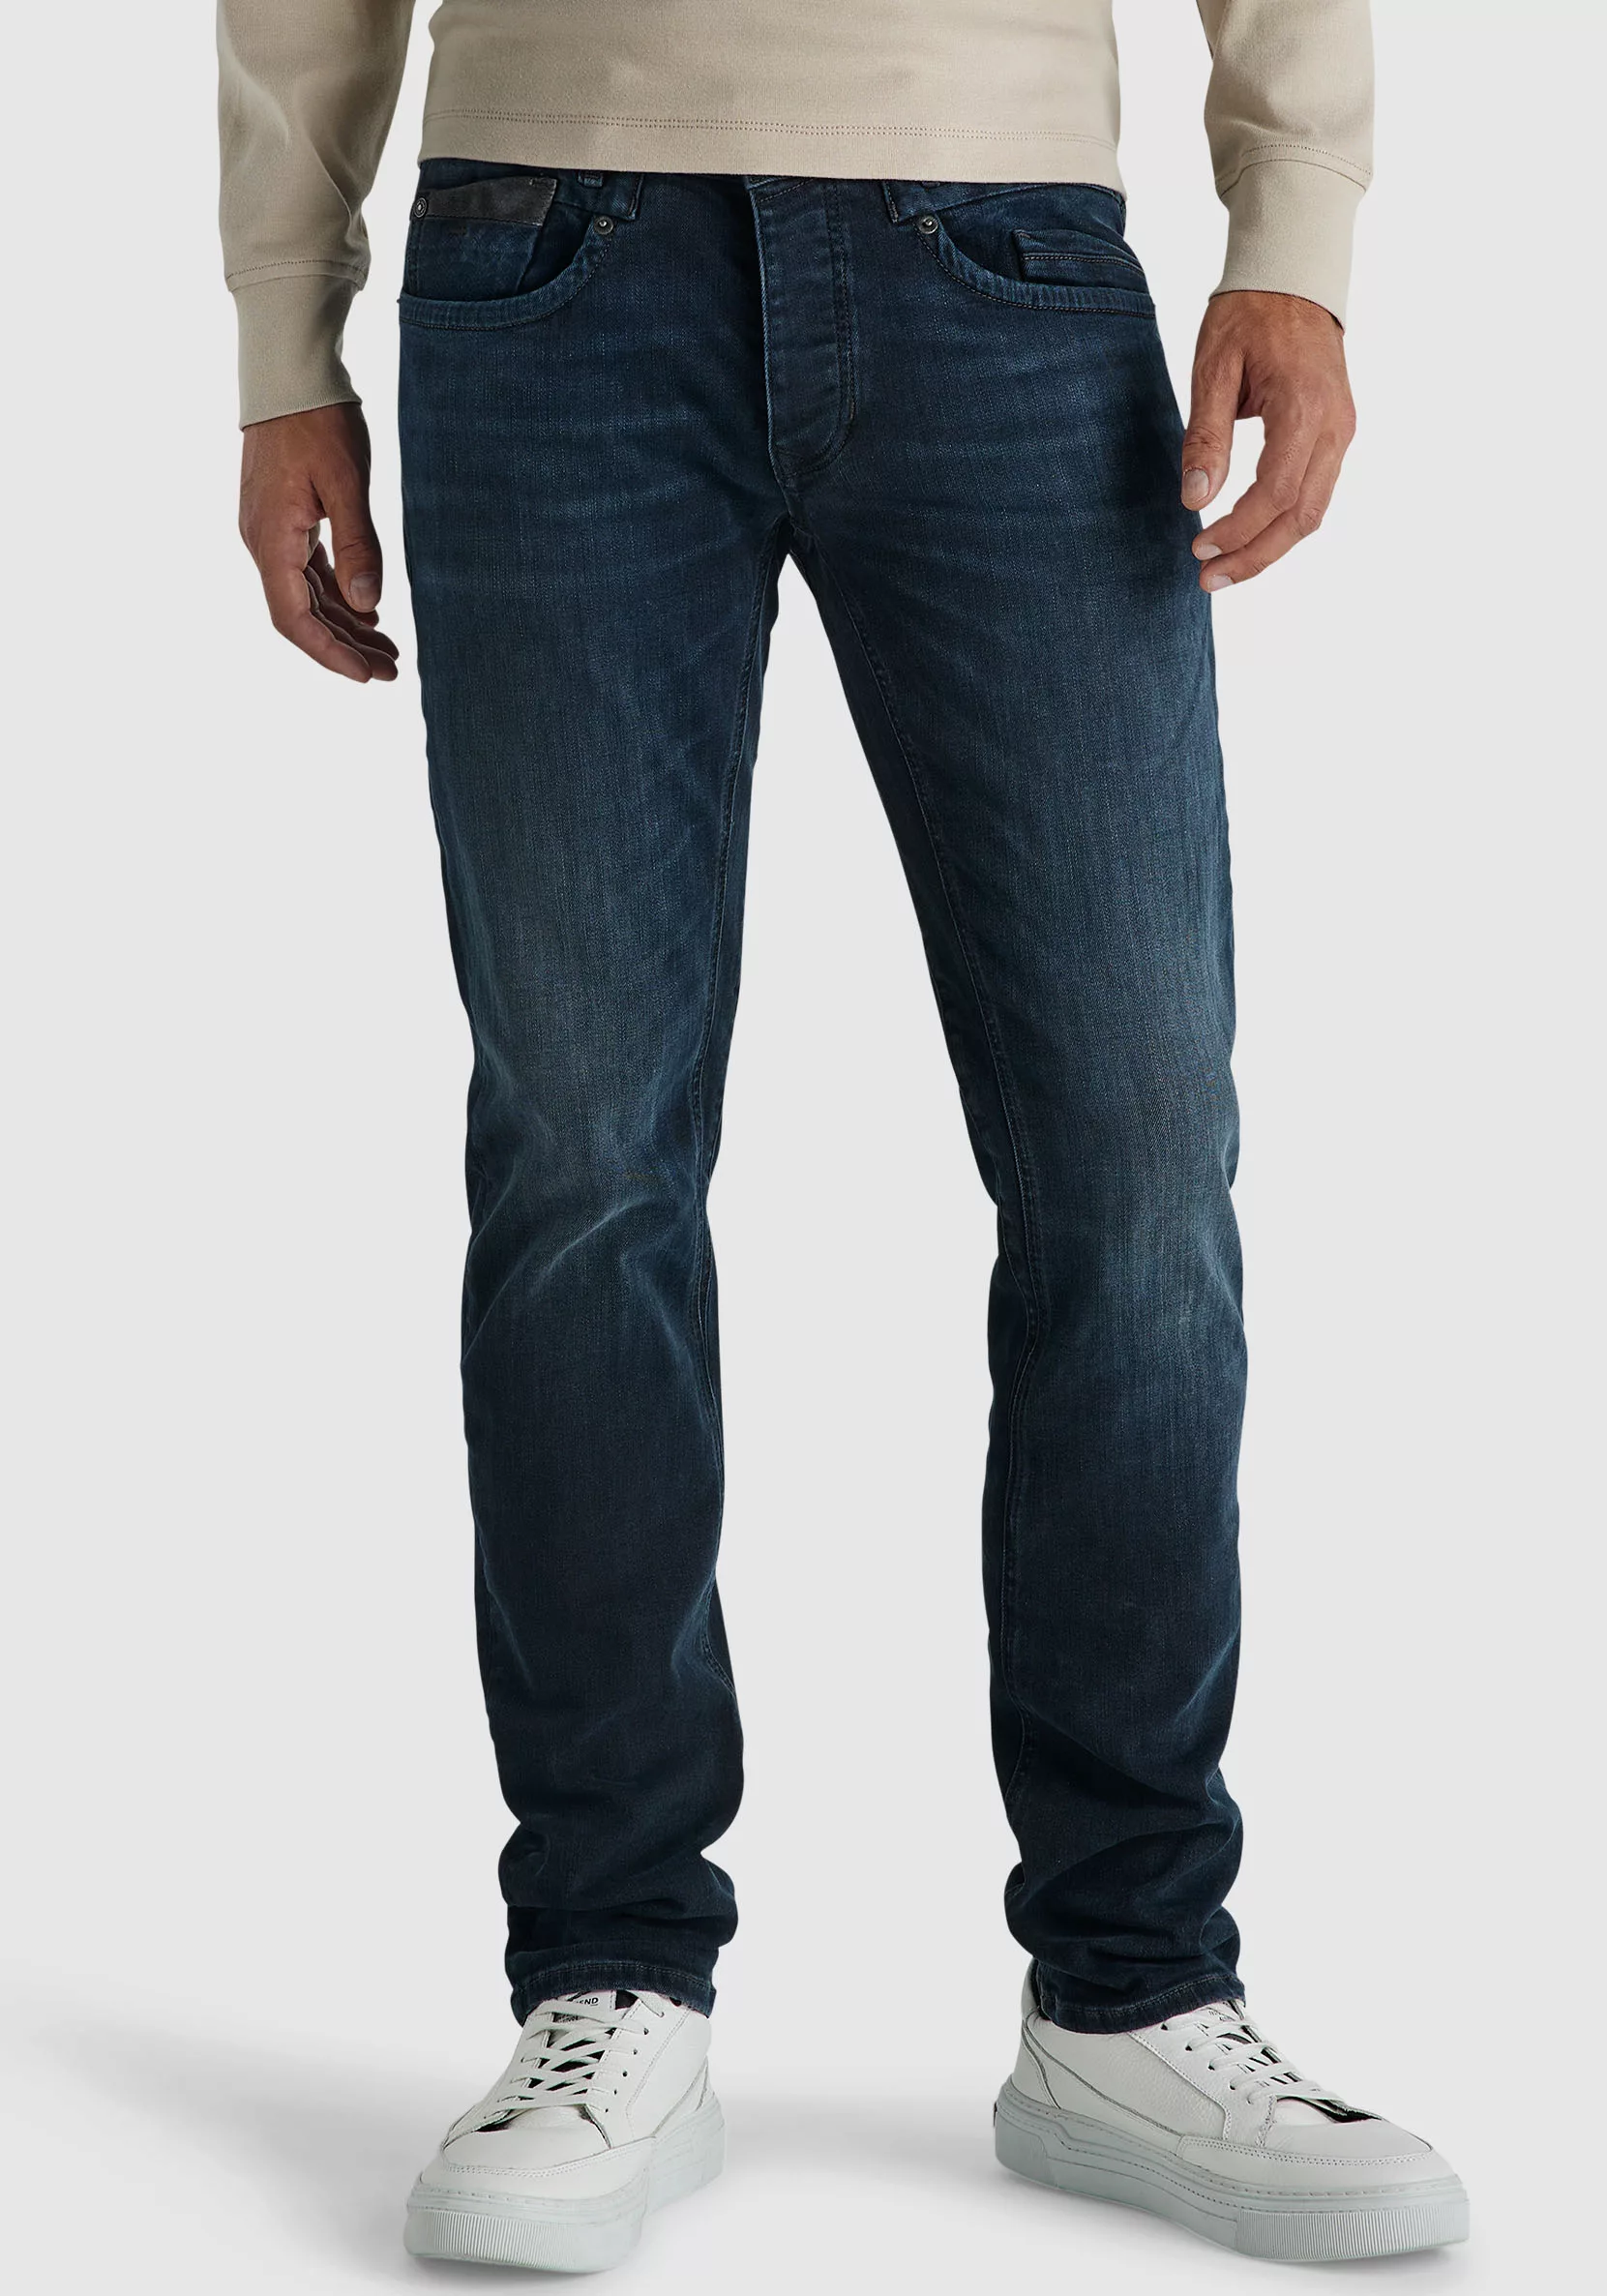 PME Legend Commander 3.0 Jeans Blau Schwarz - Größe W 36 - L 36 günstig online kaufen